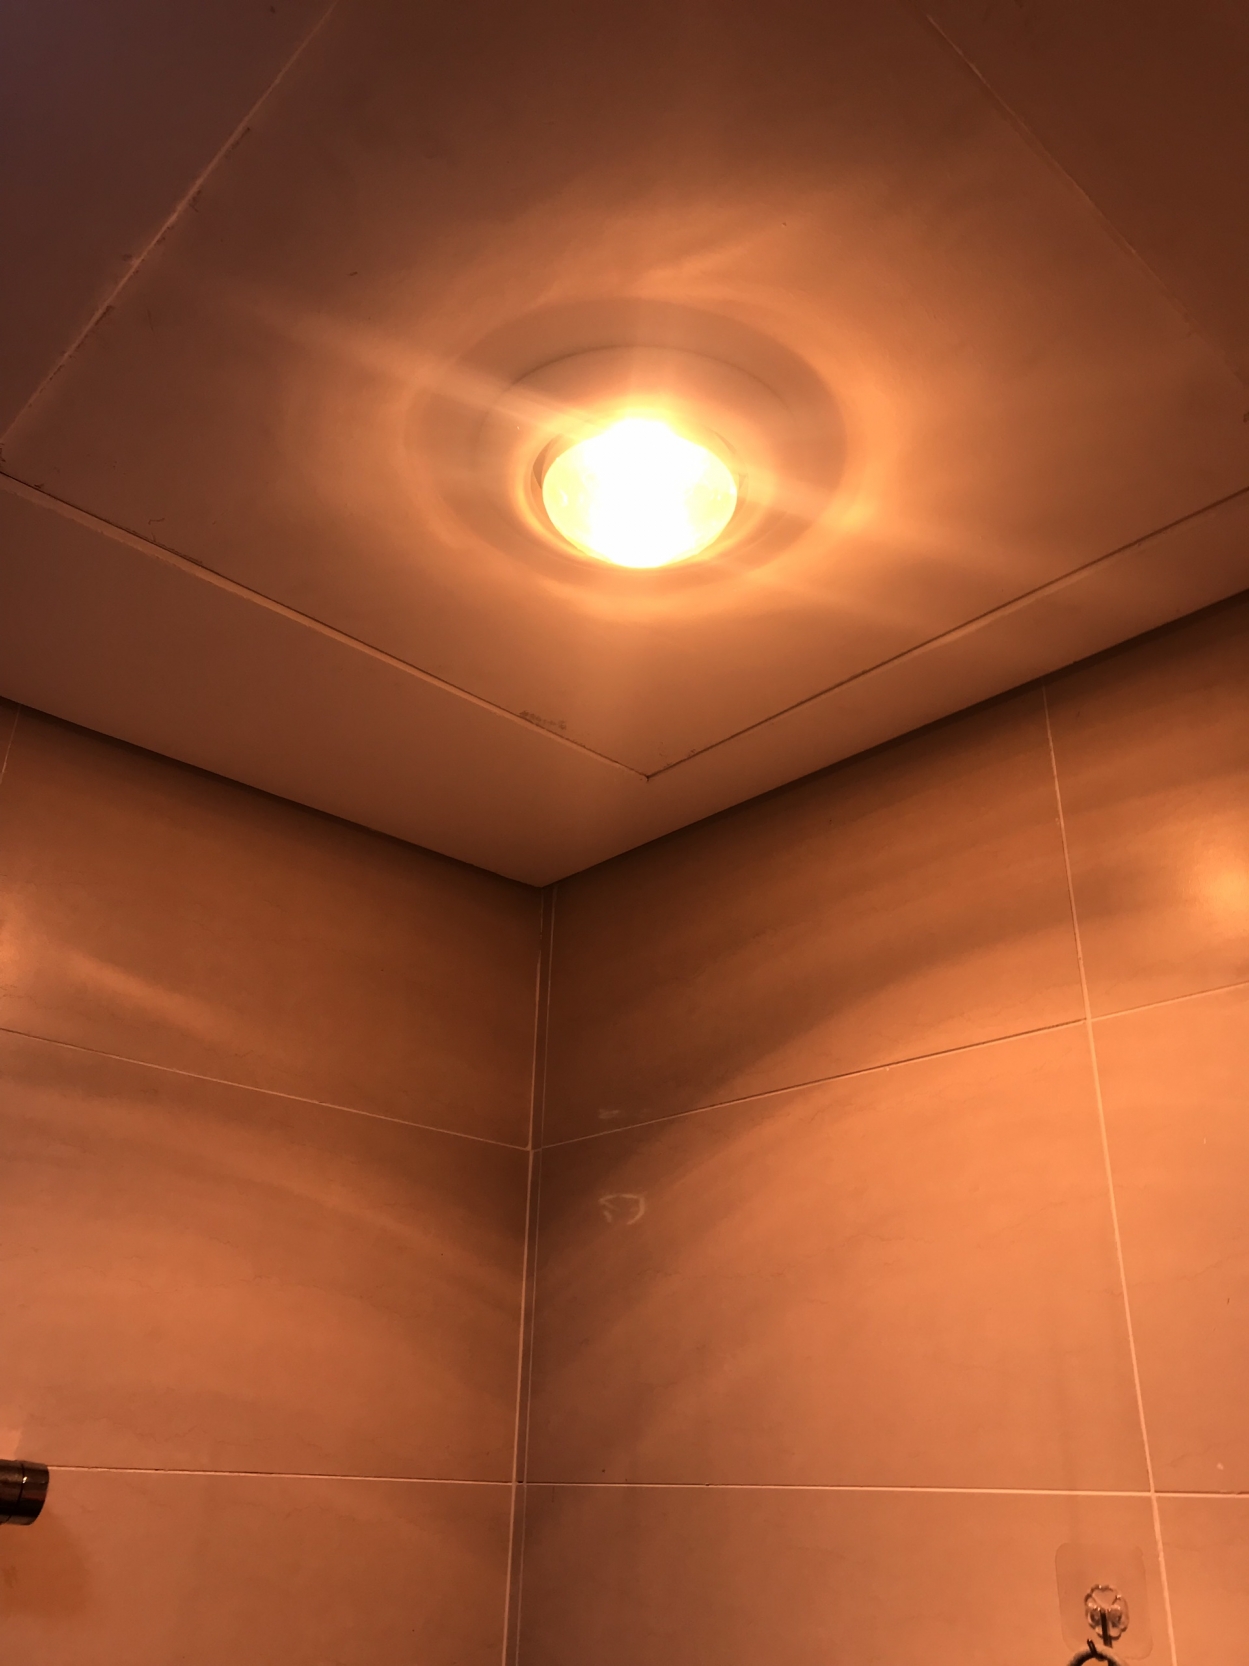 Việc sử dụng đèn sưởi âm trần nhà tắm 2 bóng có tốn điện không còn phụ thuộc vào nhu cầu sử dụng của mỗi gia đình.